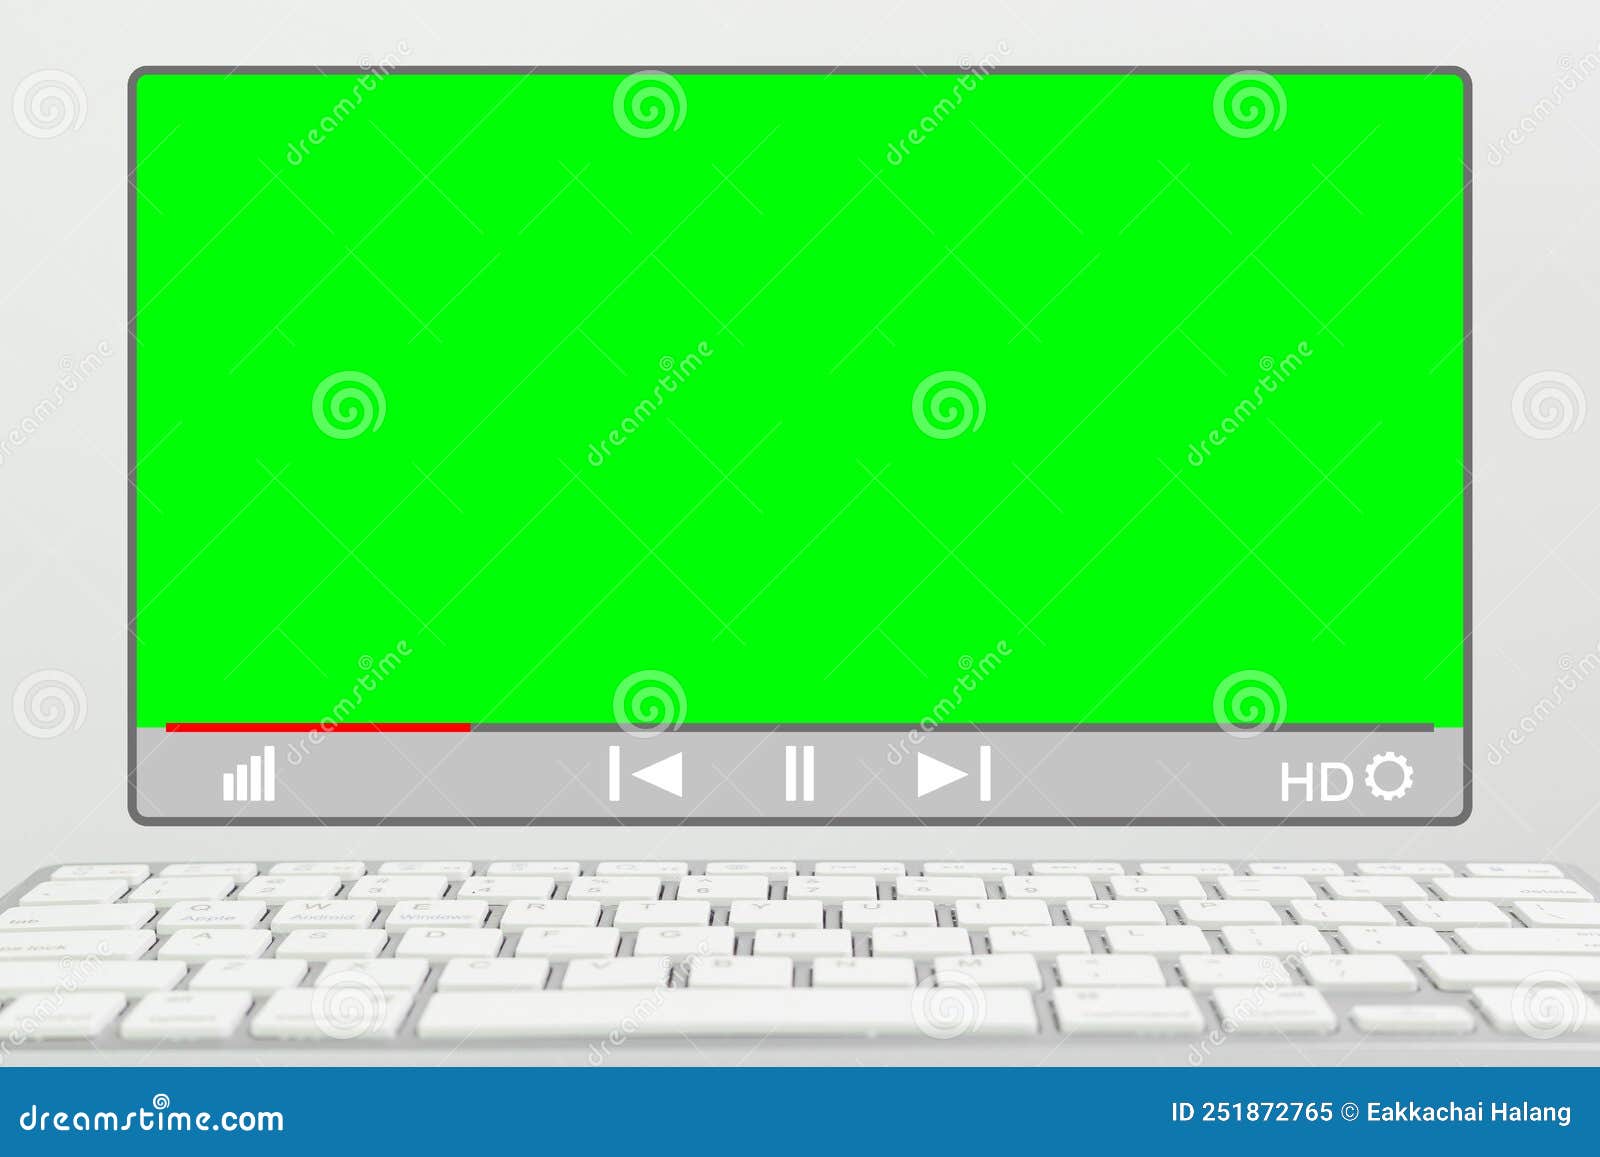 Virtual green screen mang đến cho bạn sự linh hoạt trong việc thay đổi nền cho video của mình. Hãy thưởng thức hình ảnh về công nghệ này để hiểu rõ hơn về cách sử dụng nó.